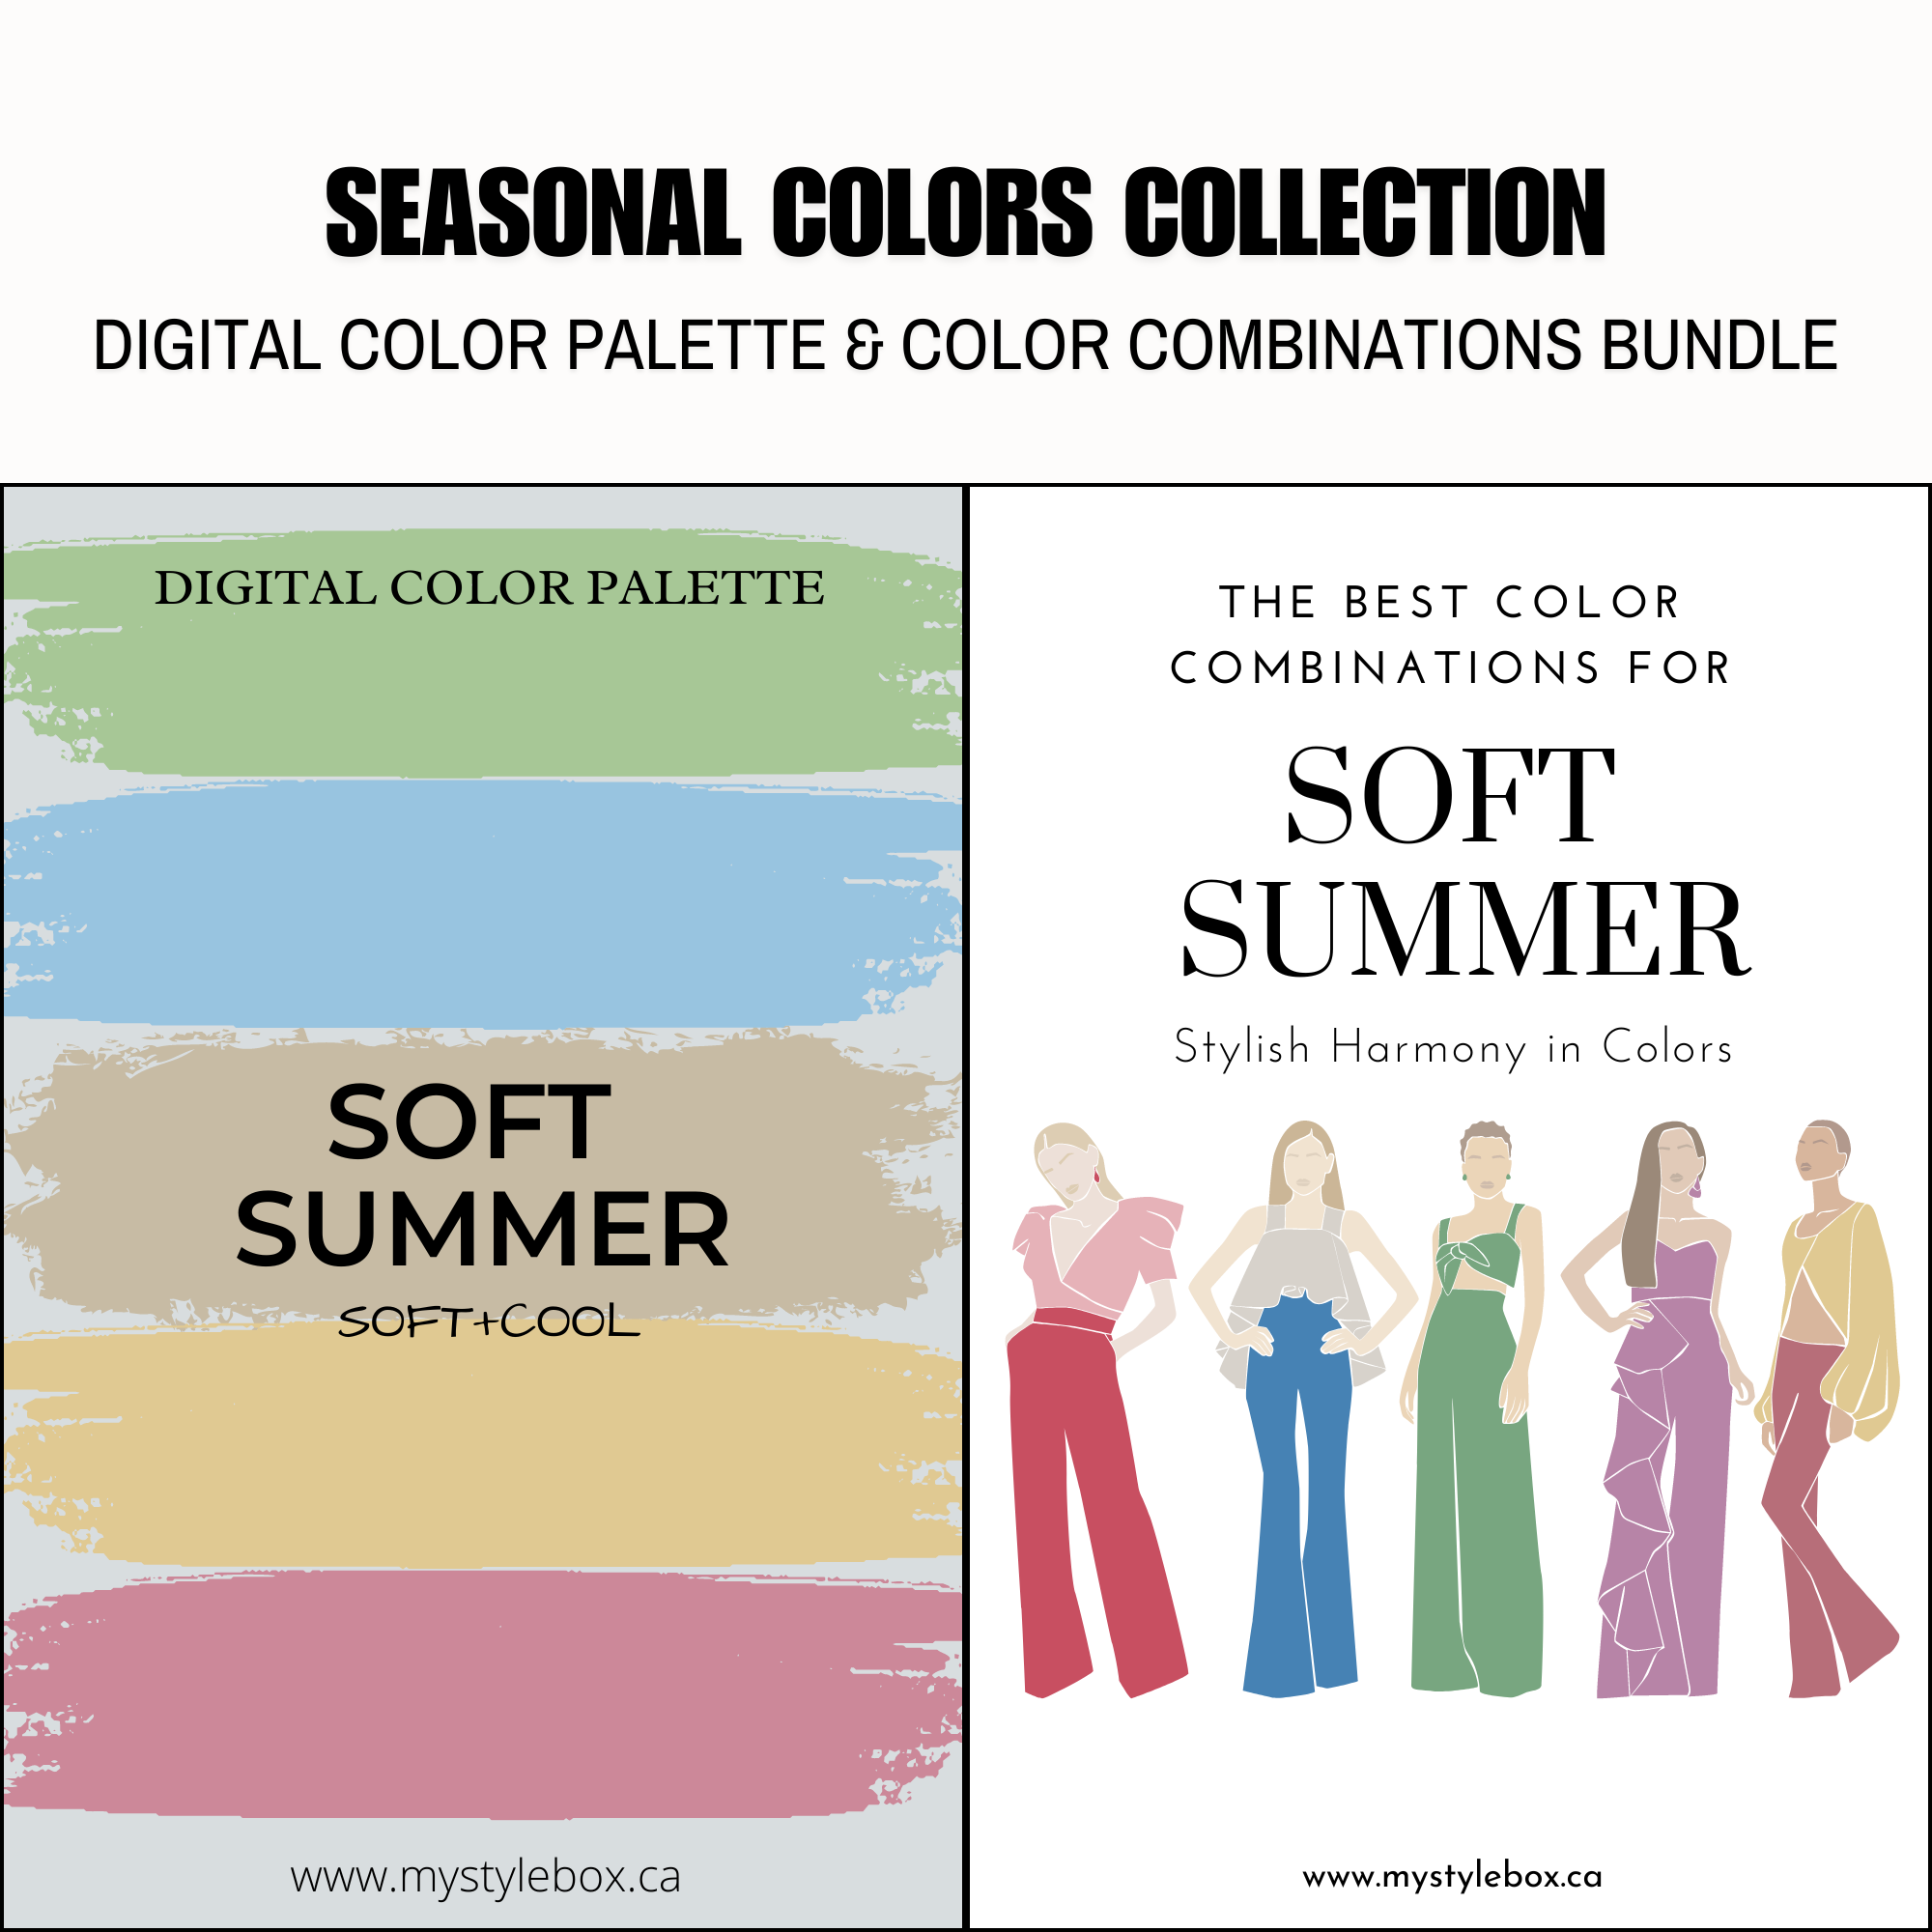 Soft Summer Season Digital Color Palette and Color Combinations Bundle